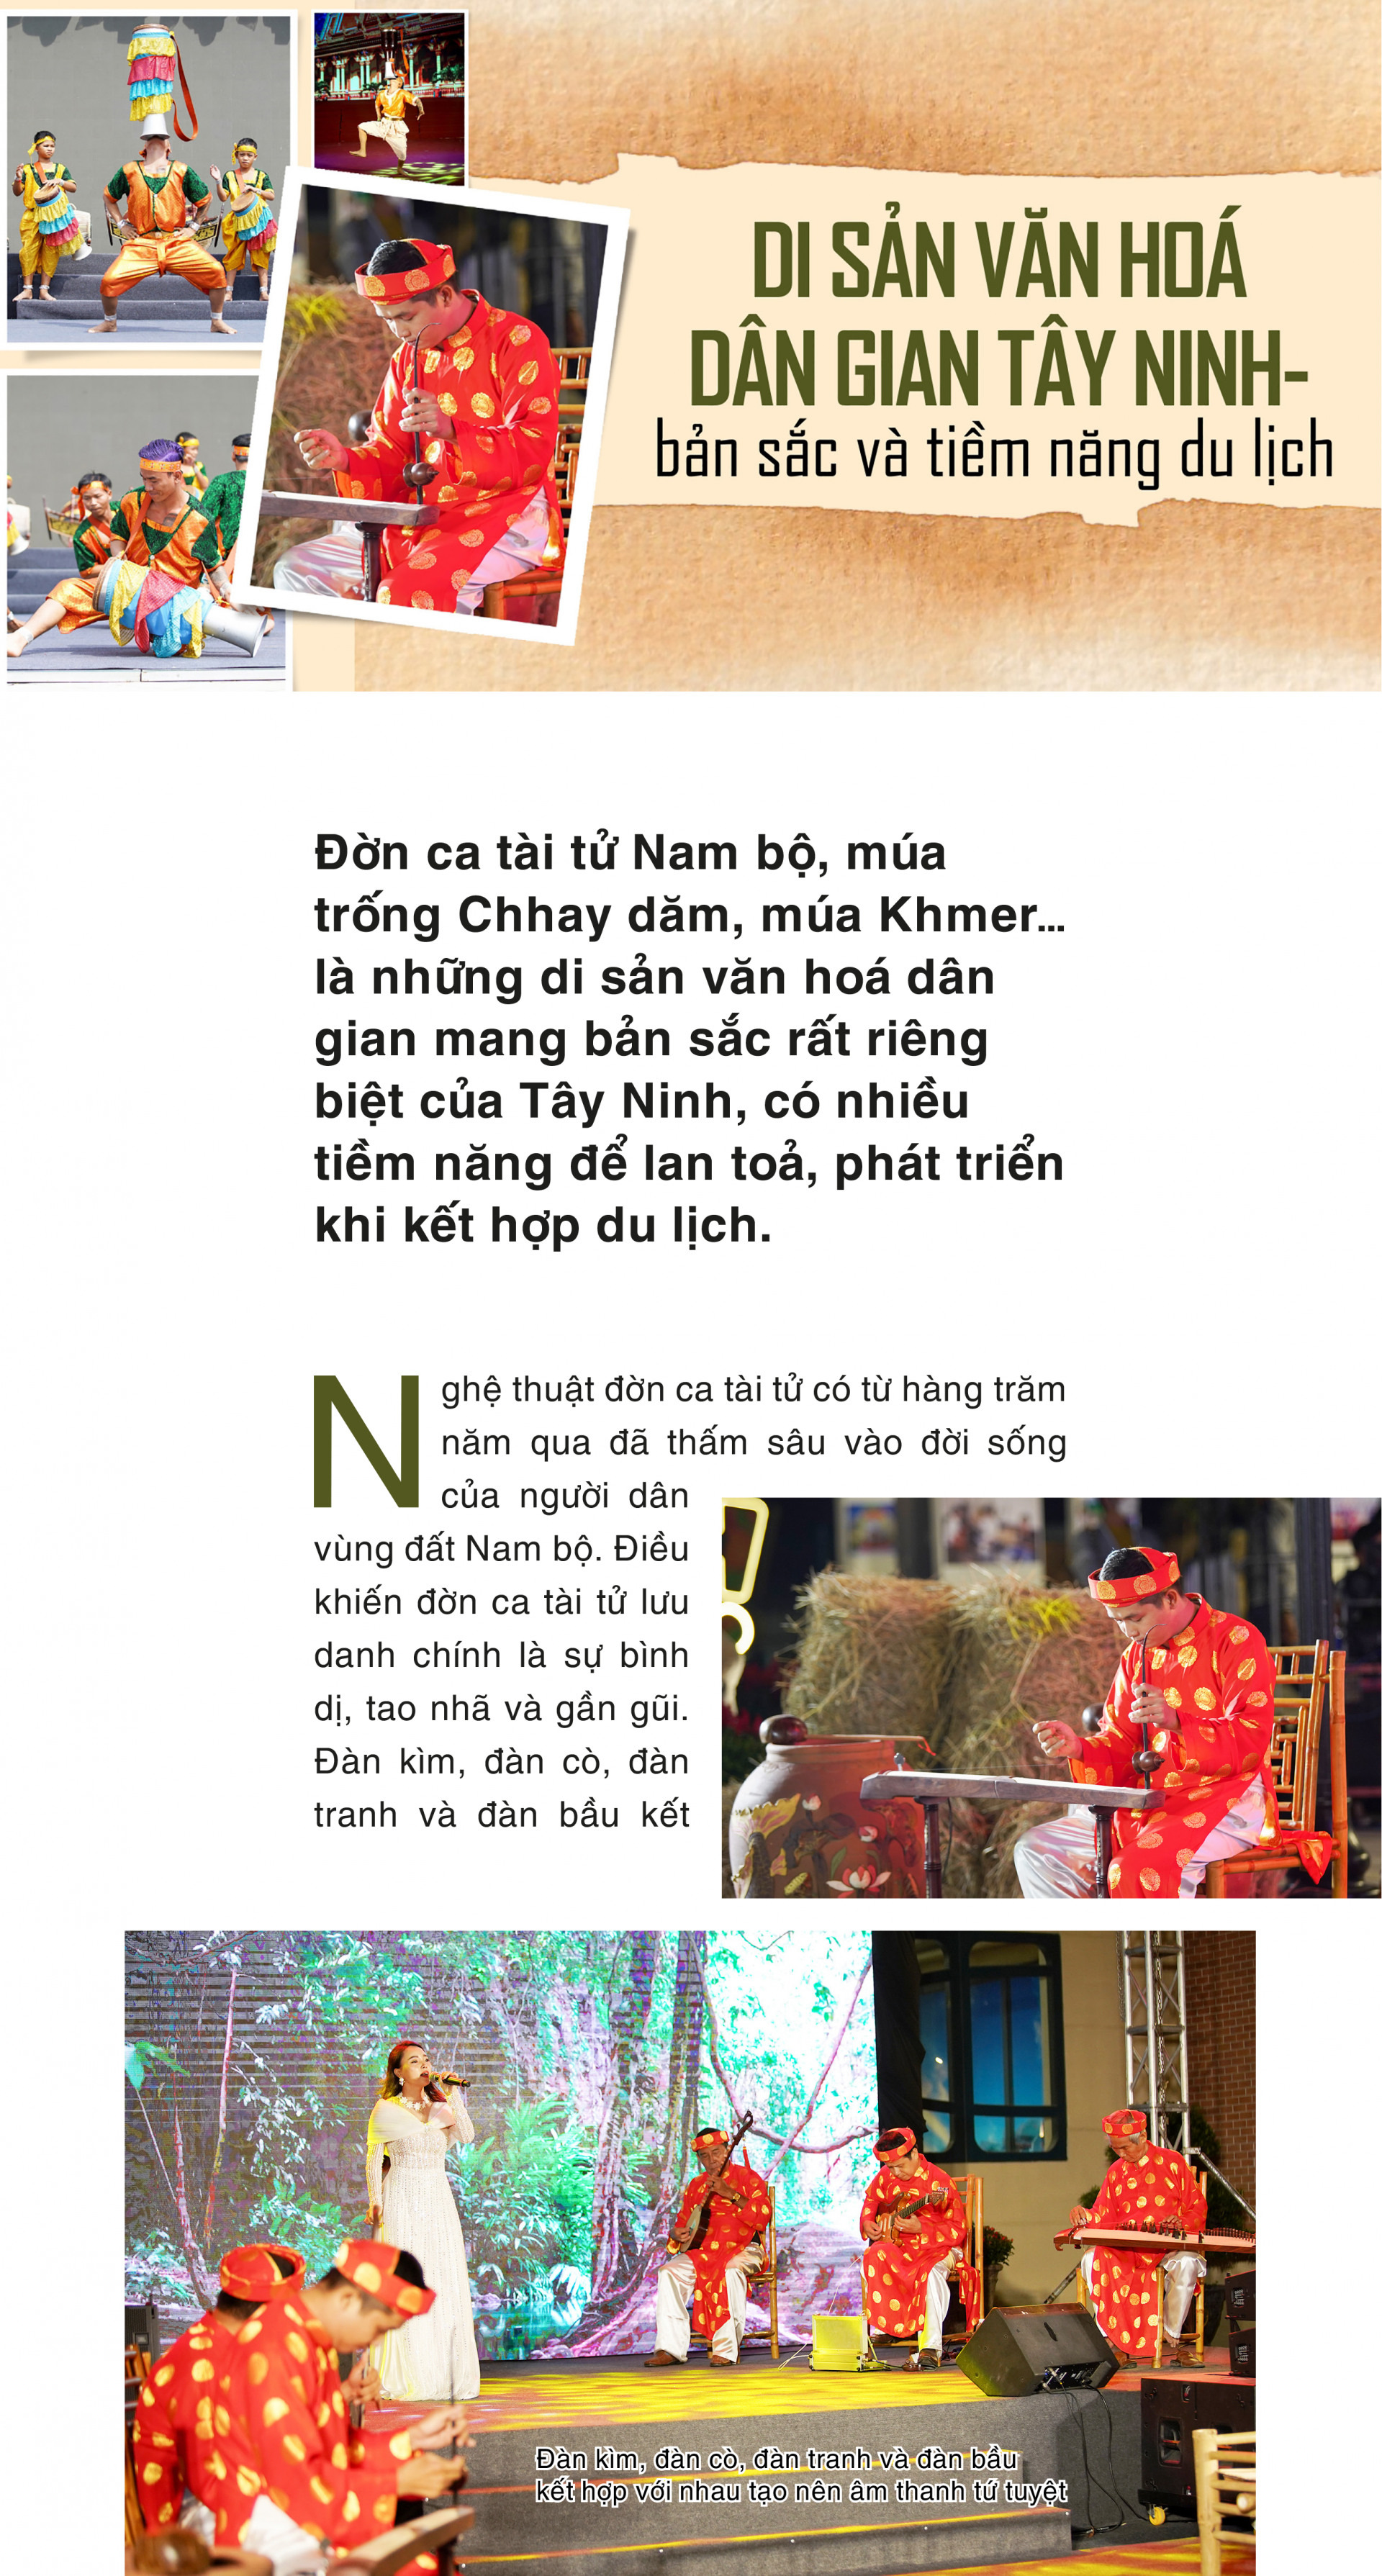 Di sản văn hoá dân gian Tây Ninh- bản sắc và tiềm năng du lịch